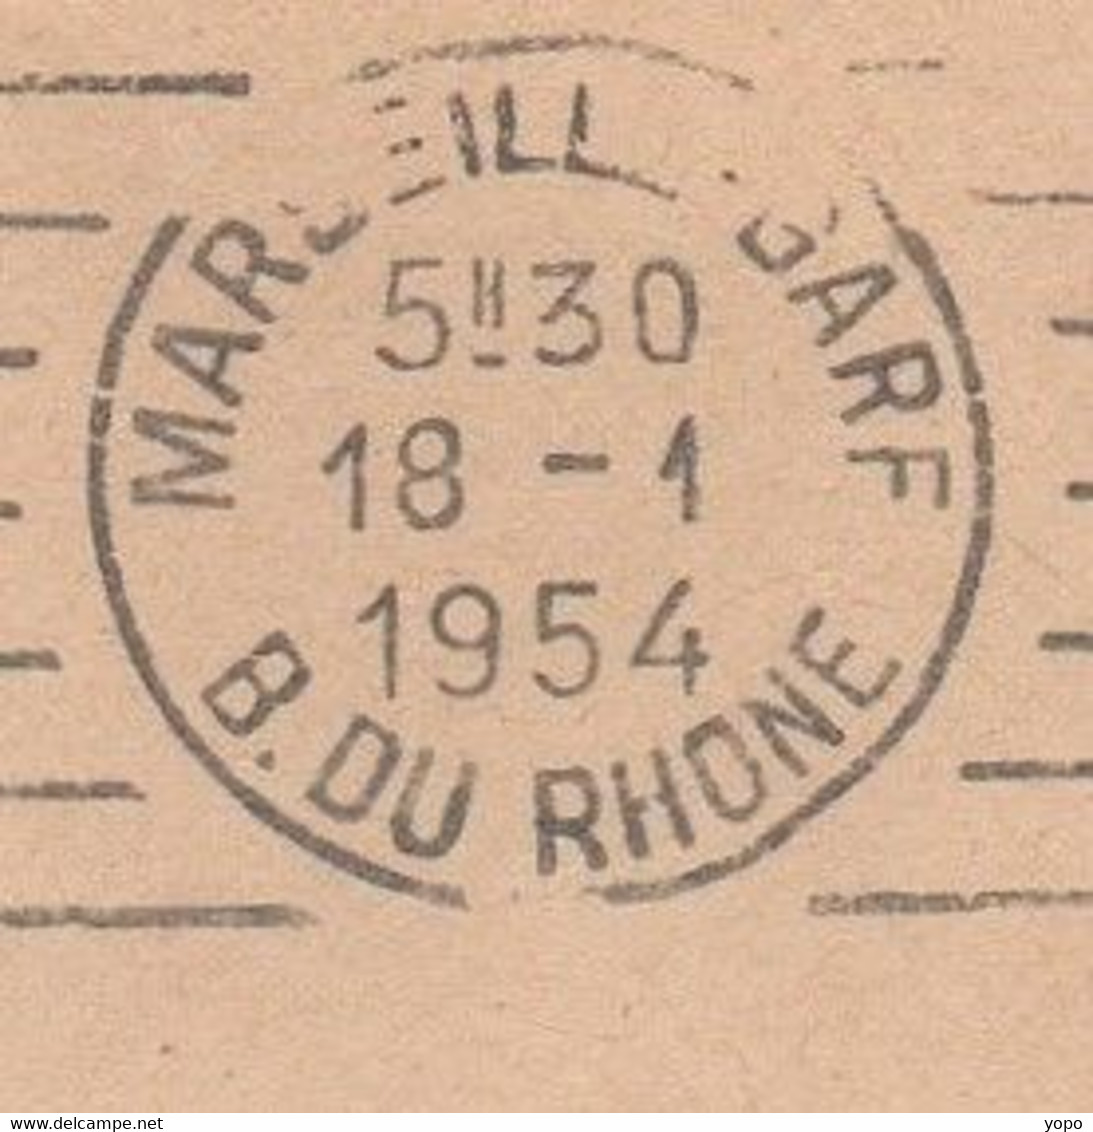 Curiosté Flamme RBV à Texte Absence De L'heure De Levée Sur L'un Des Cachets, Sur Lettre De 1954 De Marseille Gare (13) - Lettres & Documents